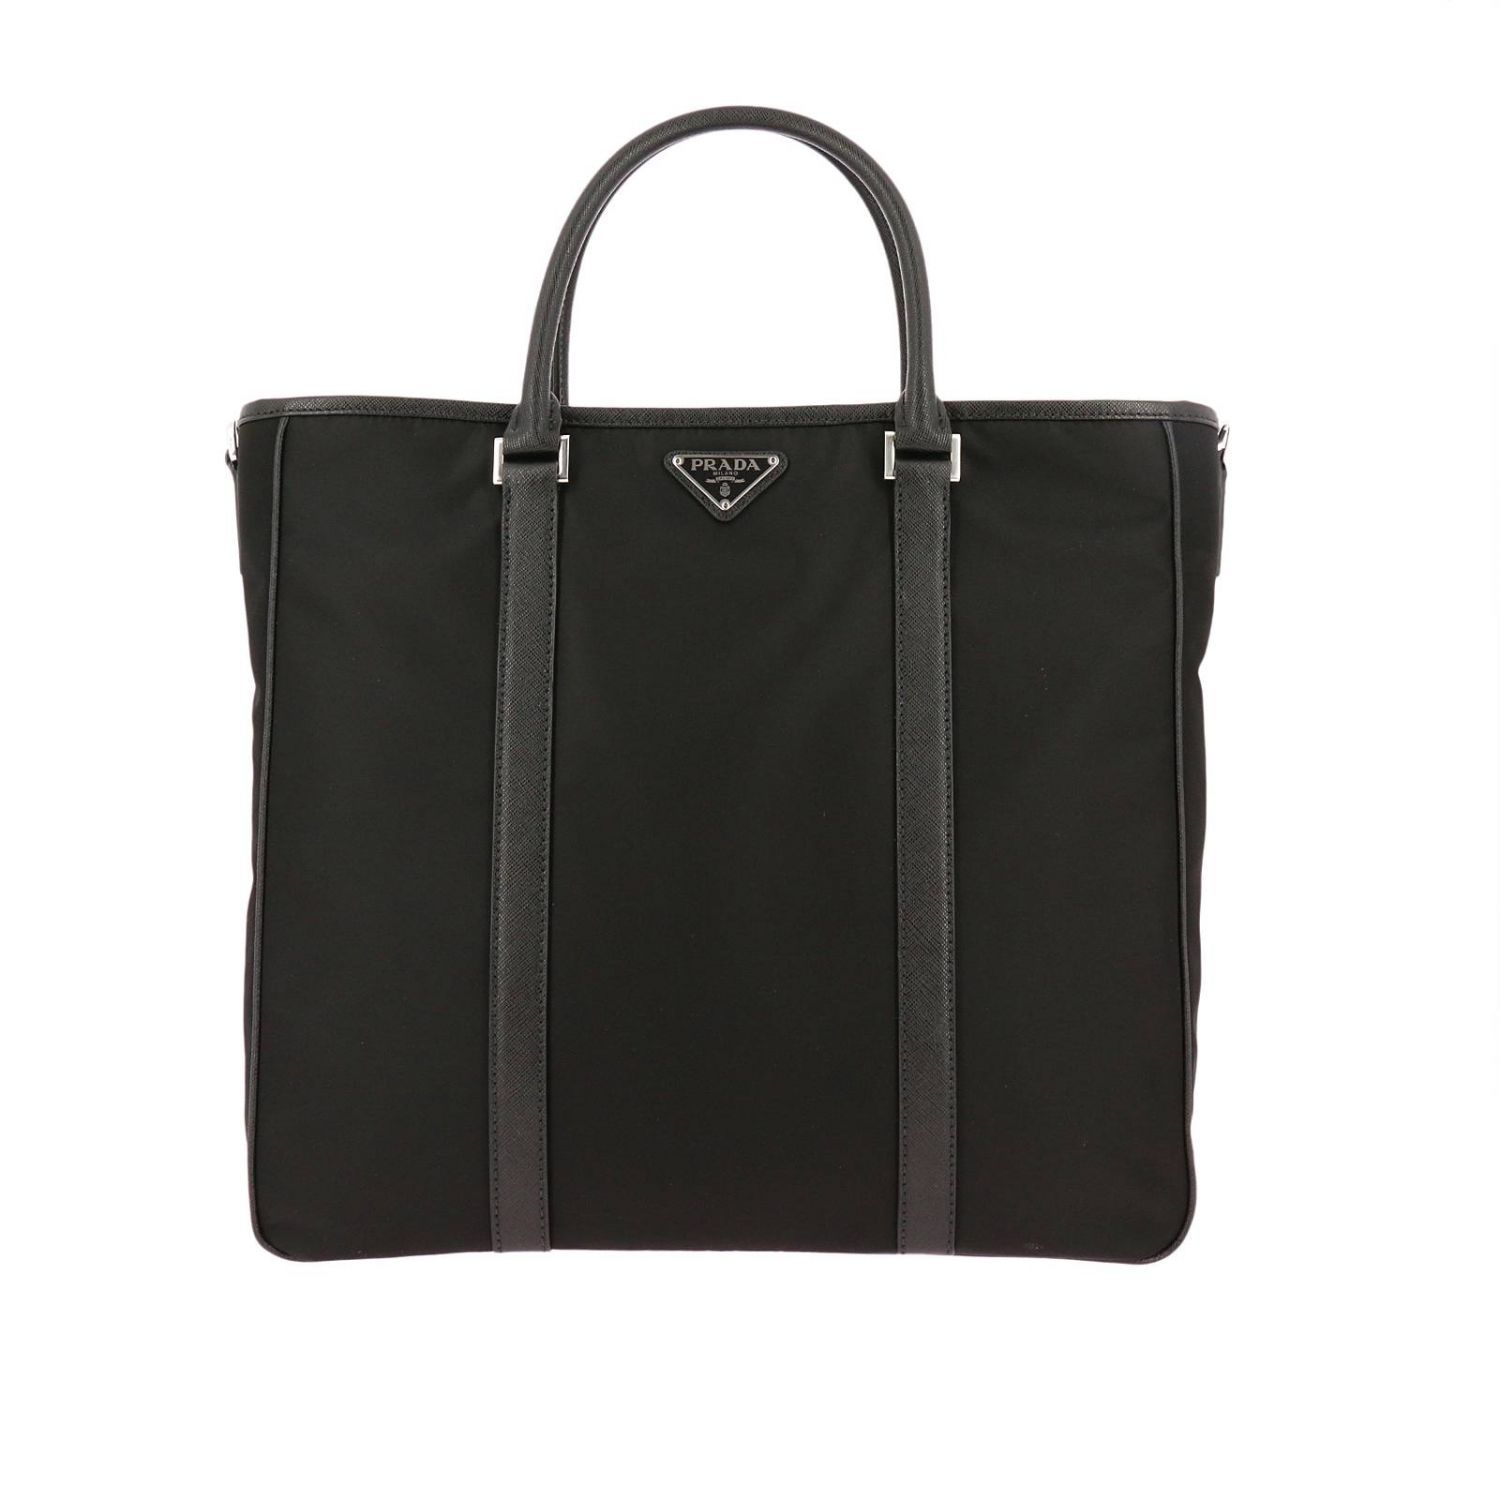 Bags men Prada | Bags Prada Men Black | Bags Prada 2VG034 V.000 064 ...